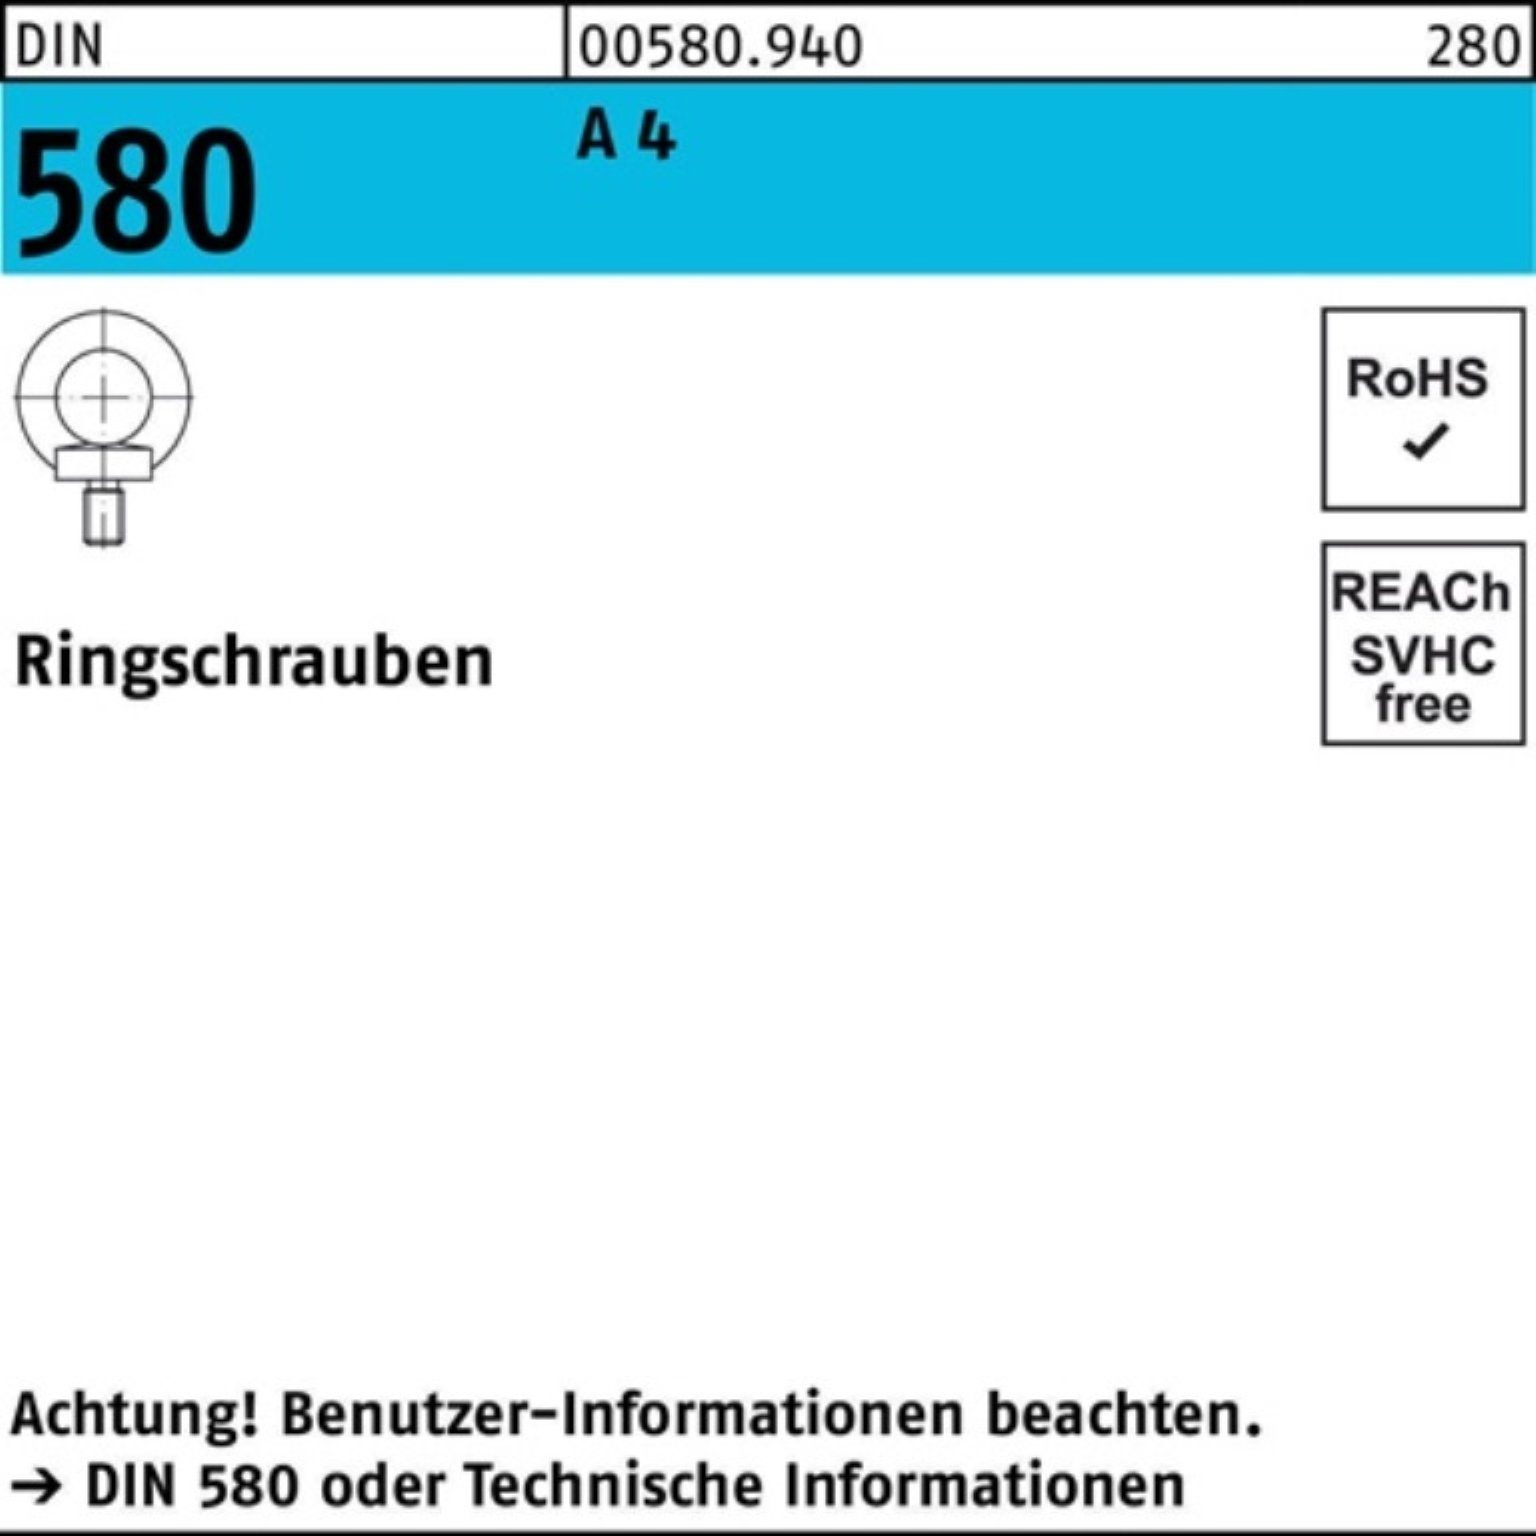 Reyher Schraube 100er Pack Ringschraube DIN 580 M20 A 4 1 Stück DIN 580 A 4 Ringschra